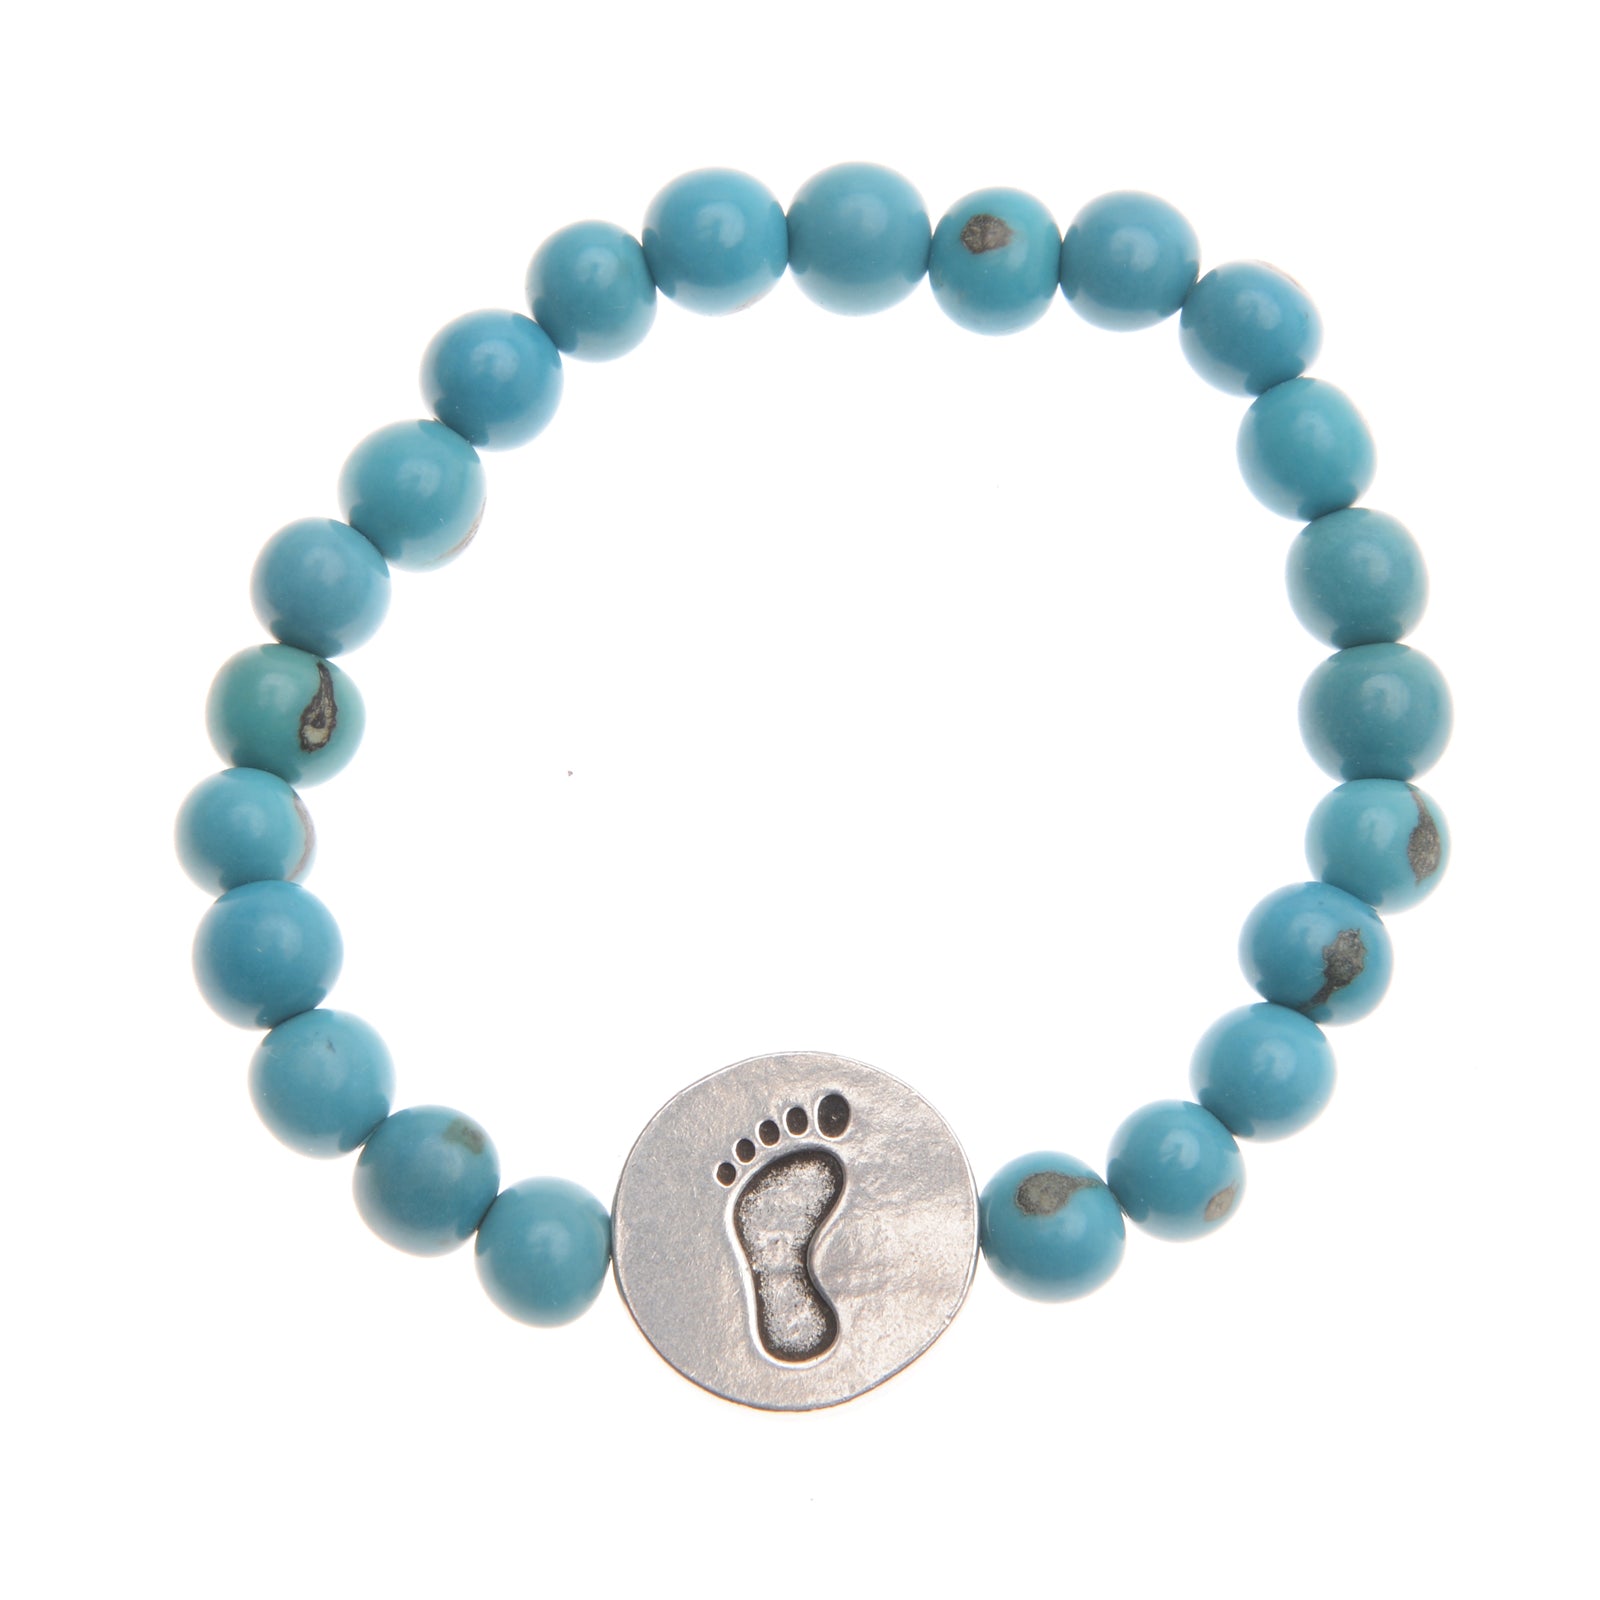 Walking Strong Bracelet - Turquoise ACAI Seeds of Life Bracelets - Whitney Howard Designs